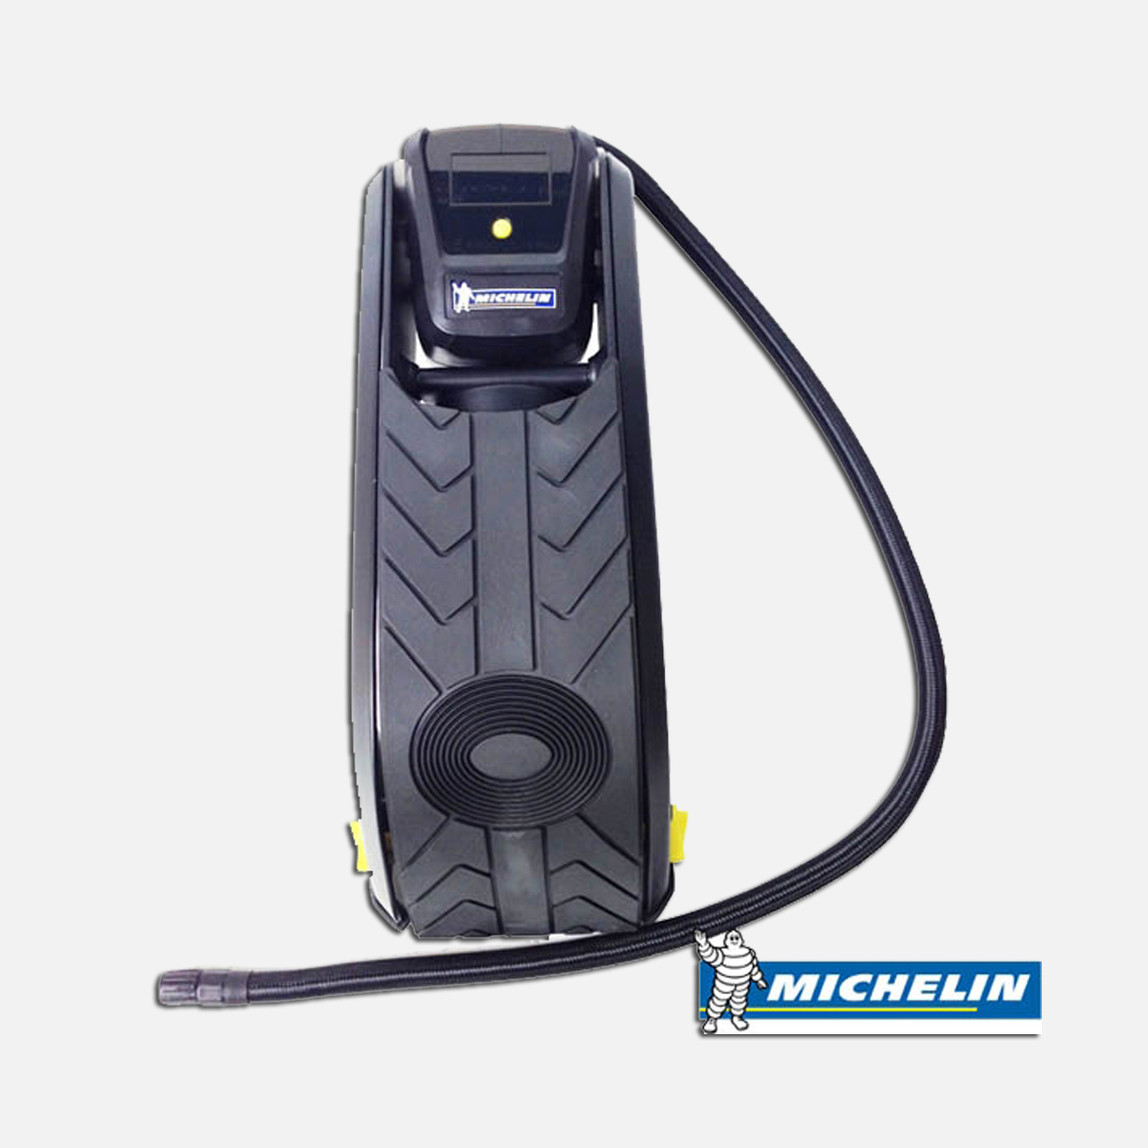    Michelin MC12208 Dijital Basınç Göstergeli Ayak Pompası 